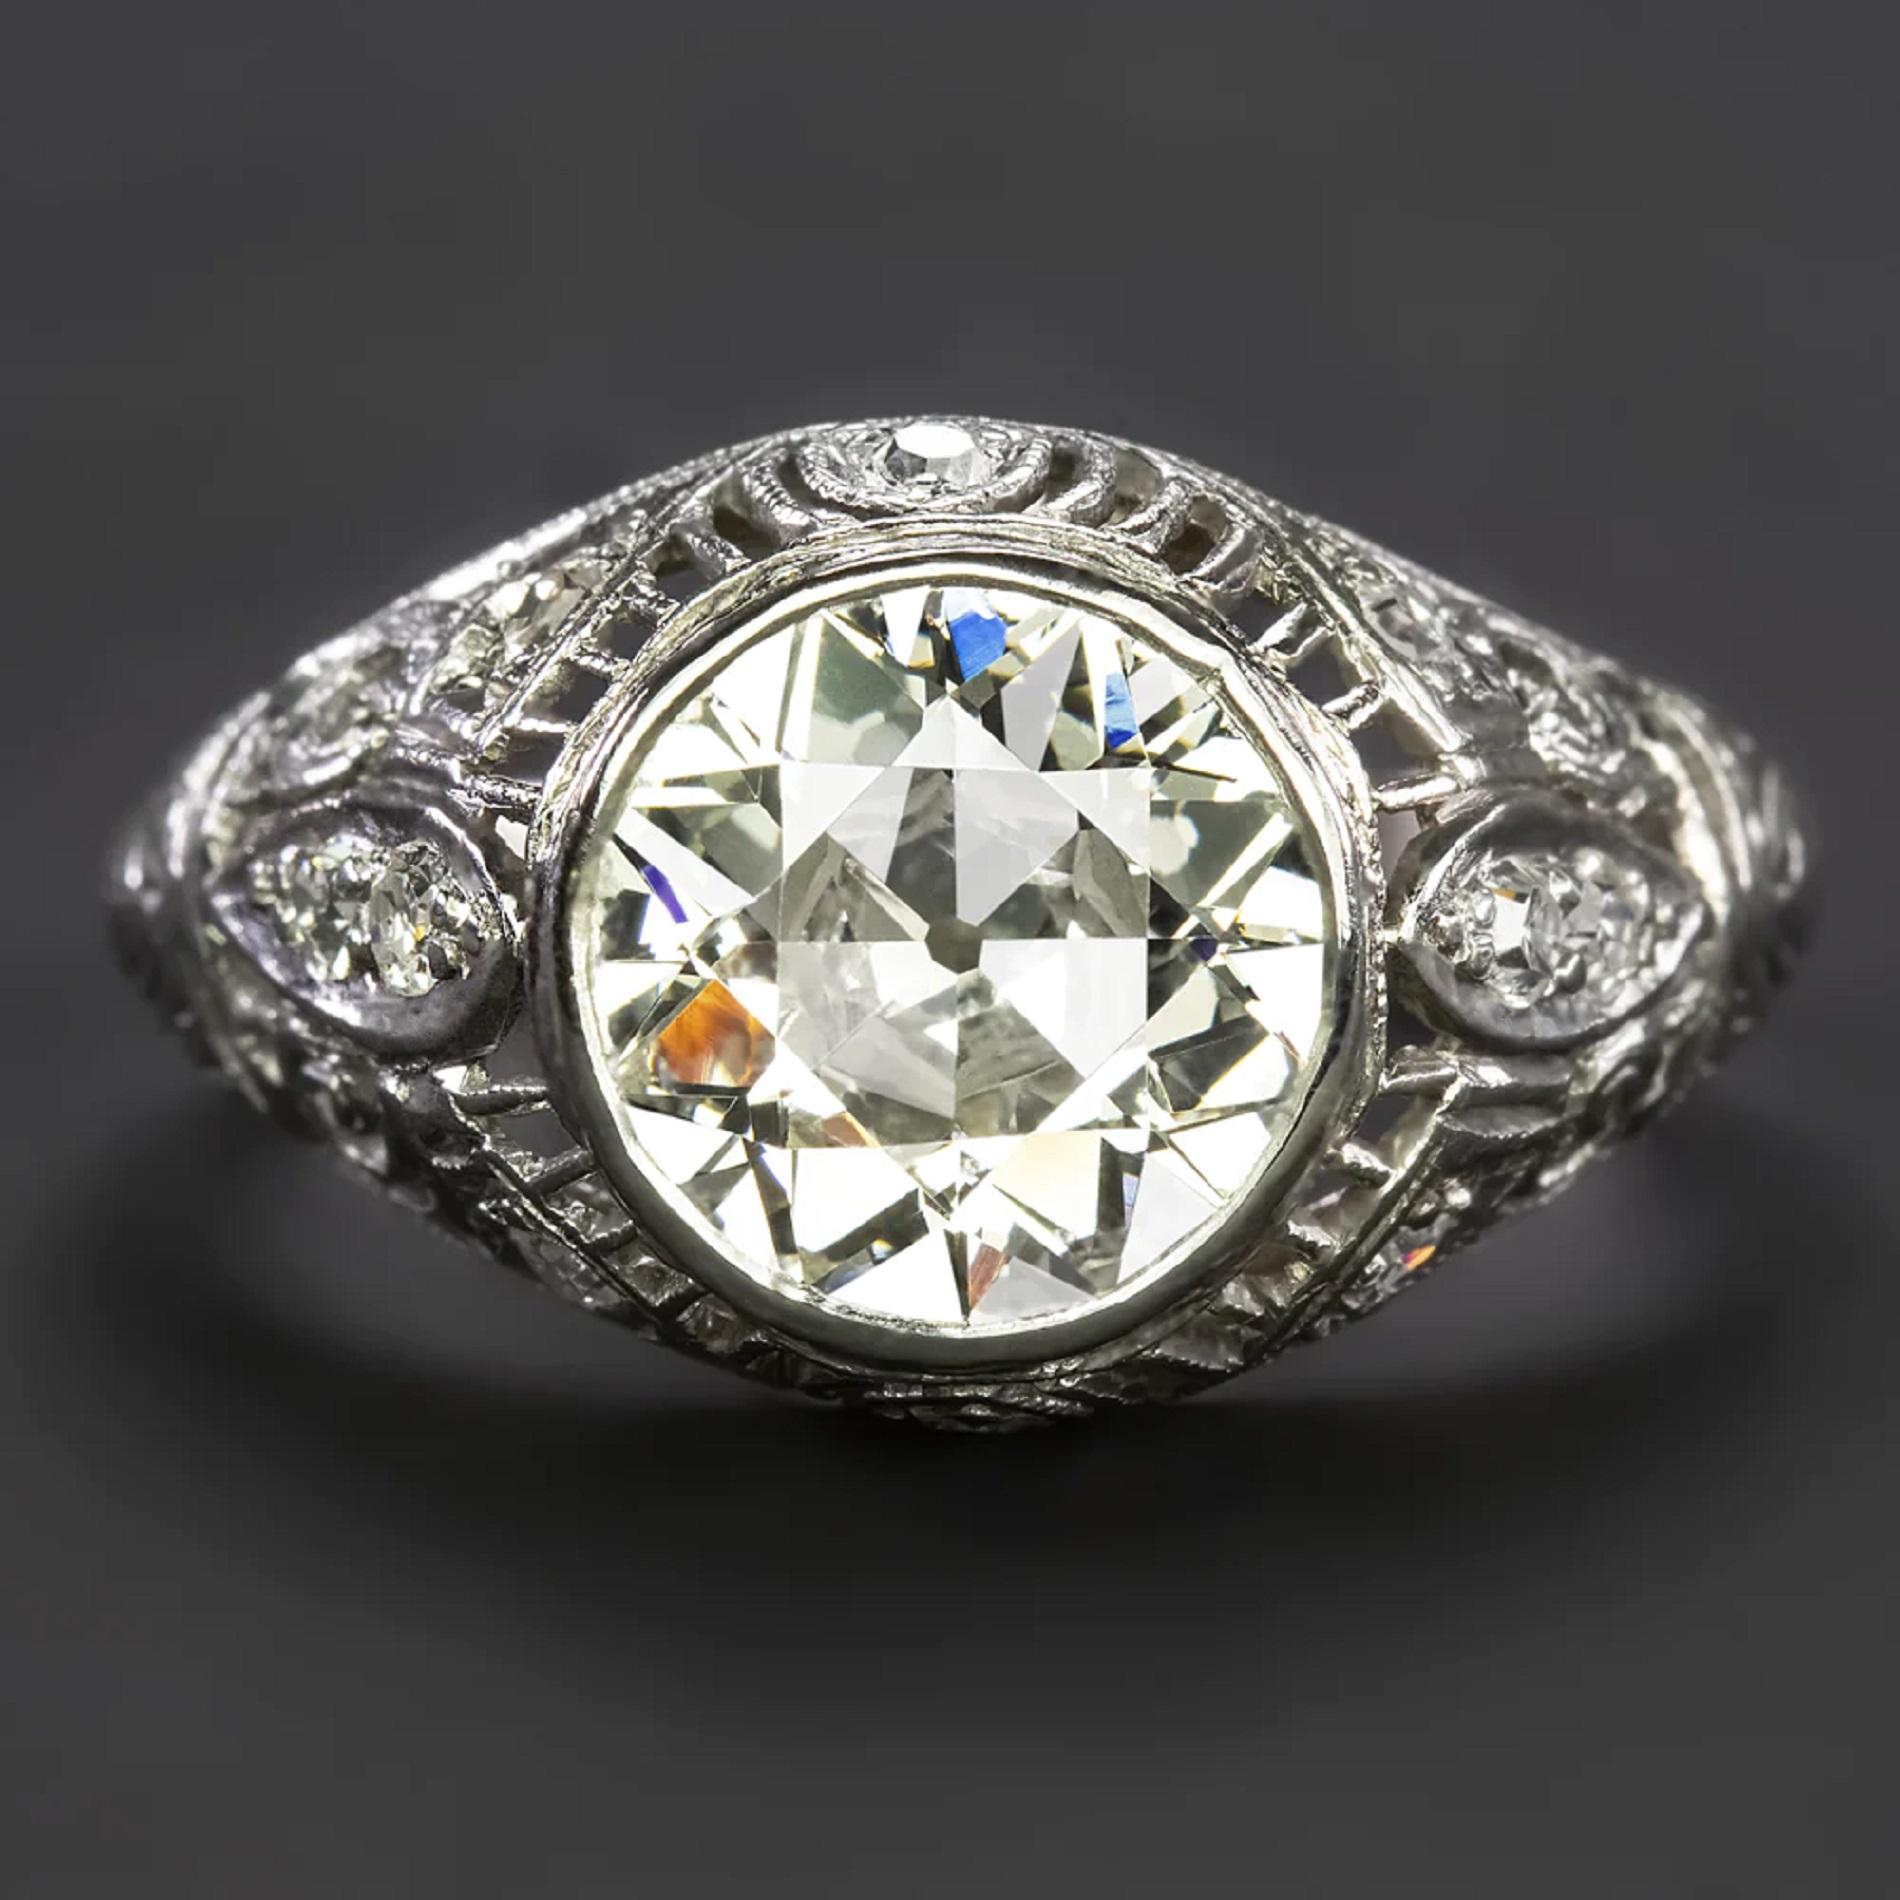 Dieser Vintage-Verlobungsring aus der Art-Déco-Ära besticht durch seinen 2,27 Karat schweren Diamanten im alten europäischen Schliff! Die Platinfassung ist wunderschön detailliert mit einer diamantbesetzten, filigranen Kuppelform

Höhepunkte:

-